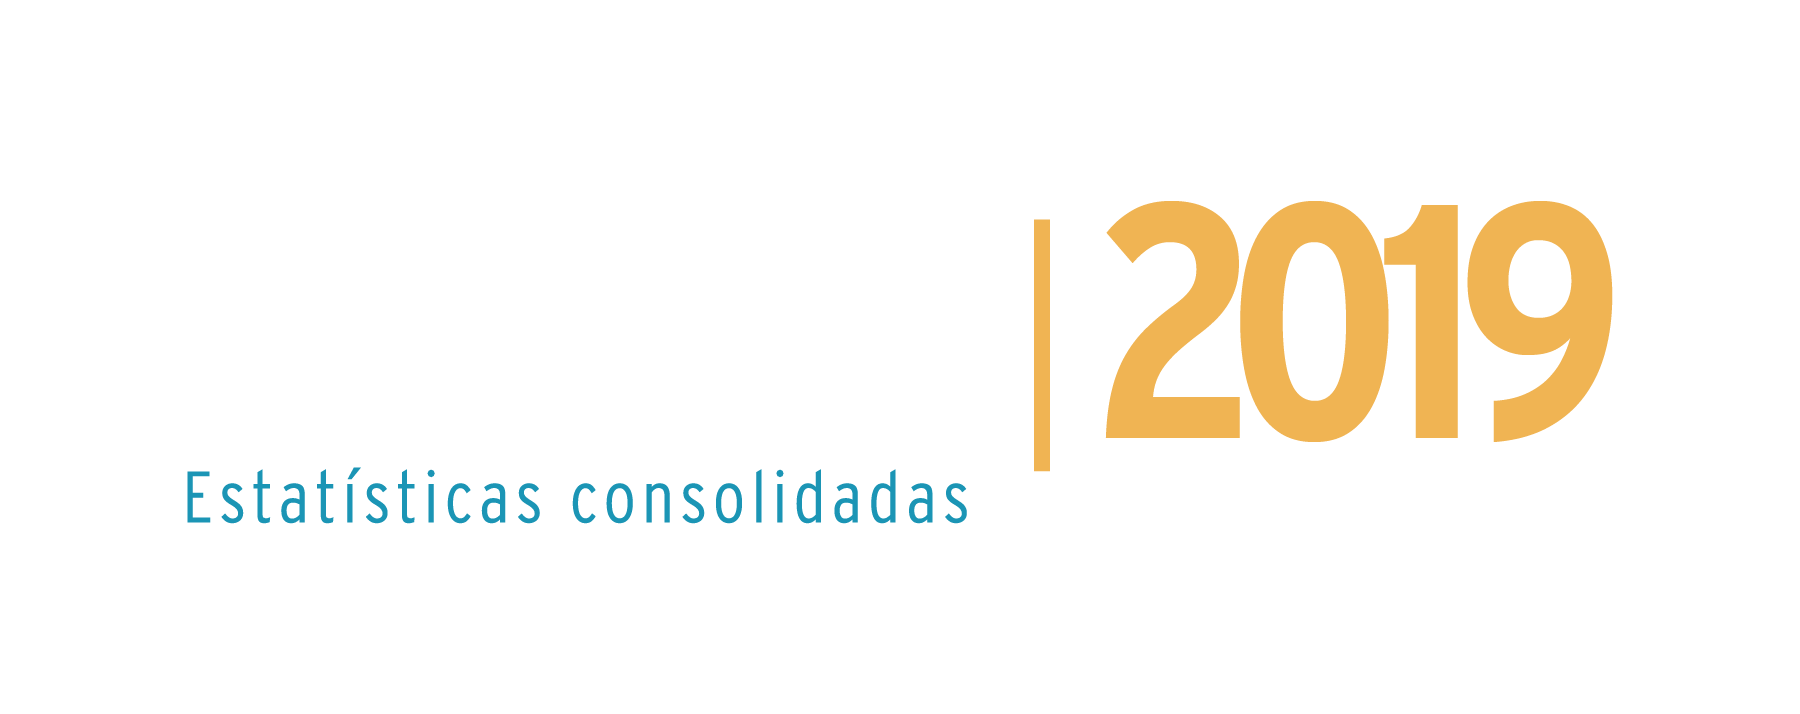 Anuário CNT do Transporte